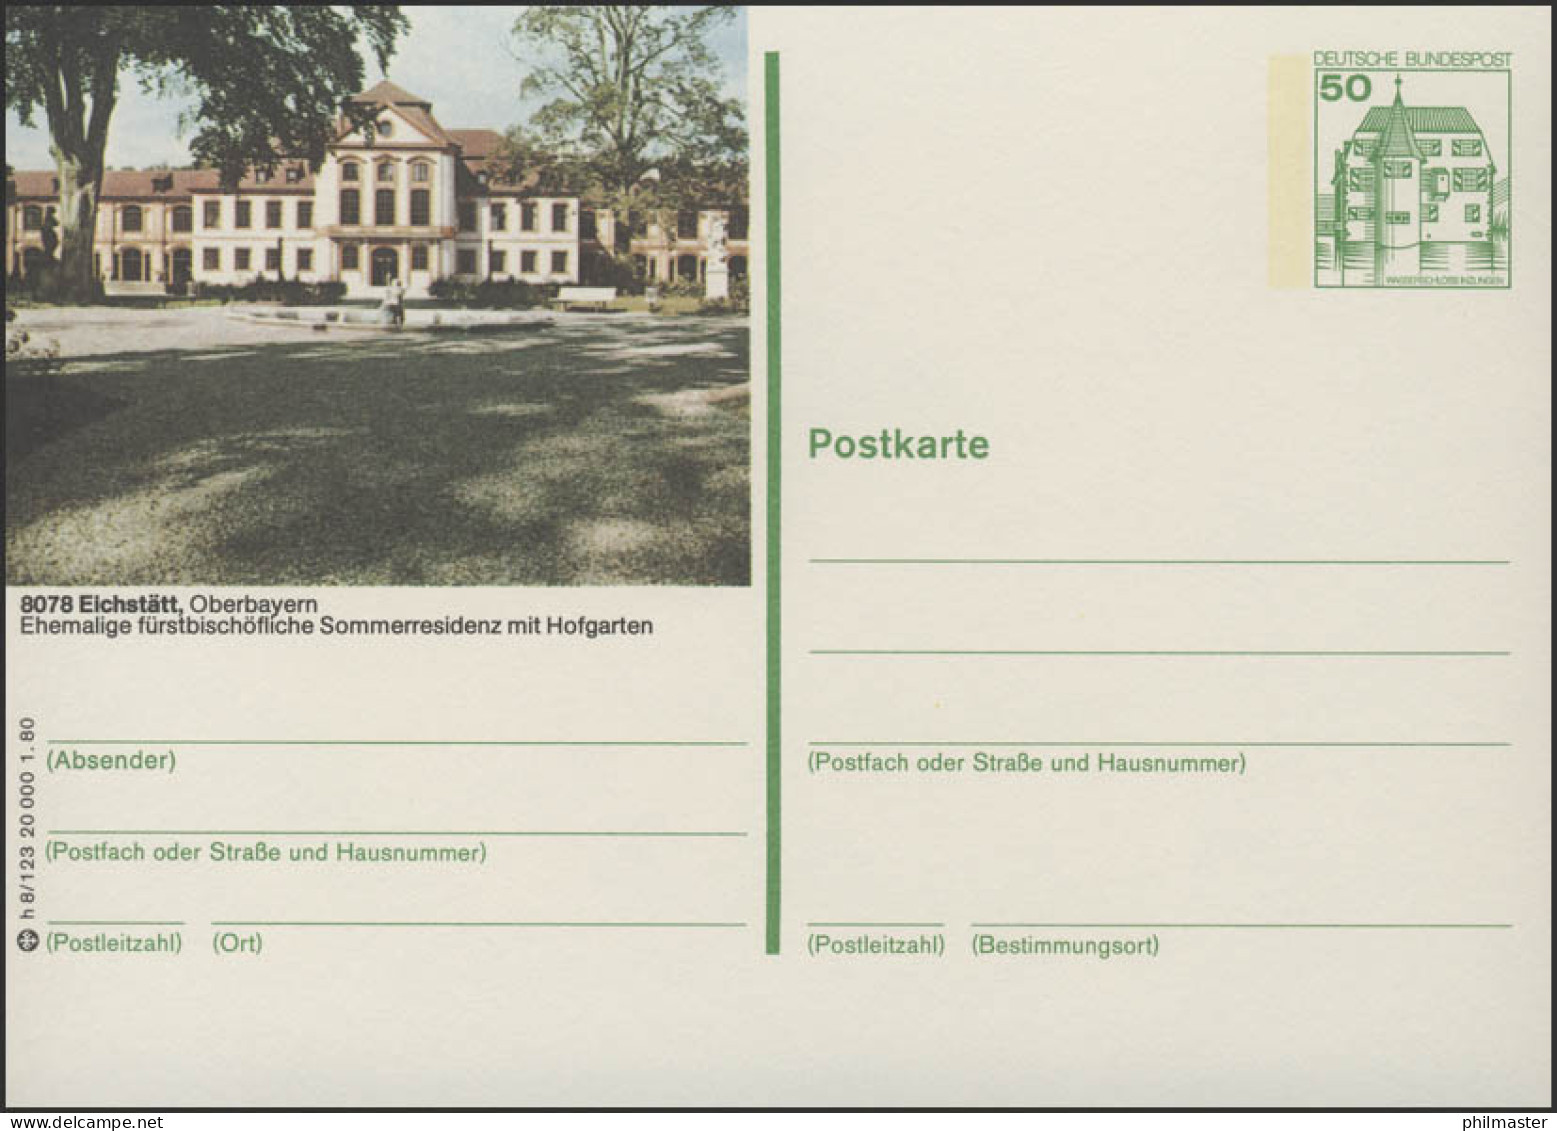 P130-h8/123 - 8078 Eichstädt, Schloß ** - Bildpostkarten - Ungebraucht